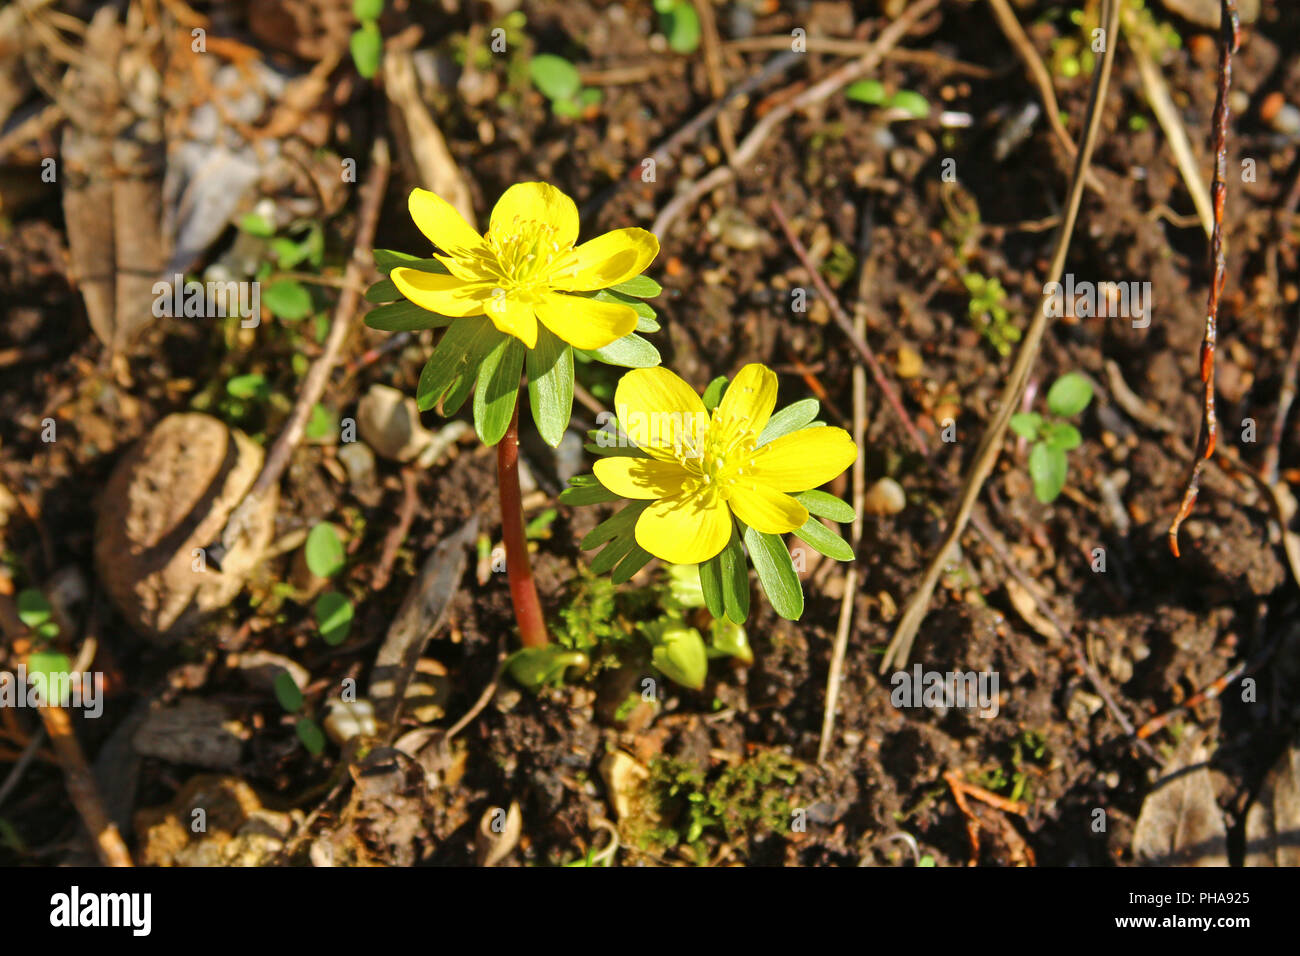 Winter aconite (Eranthis hyemalis) Stock Photo